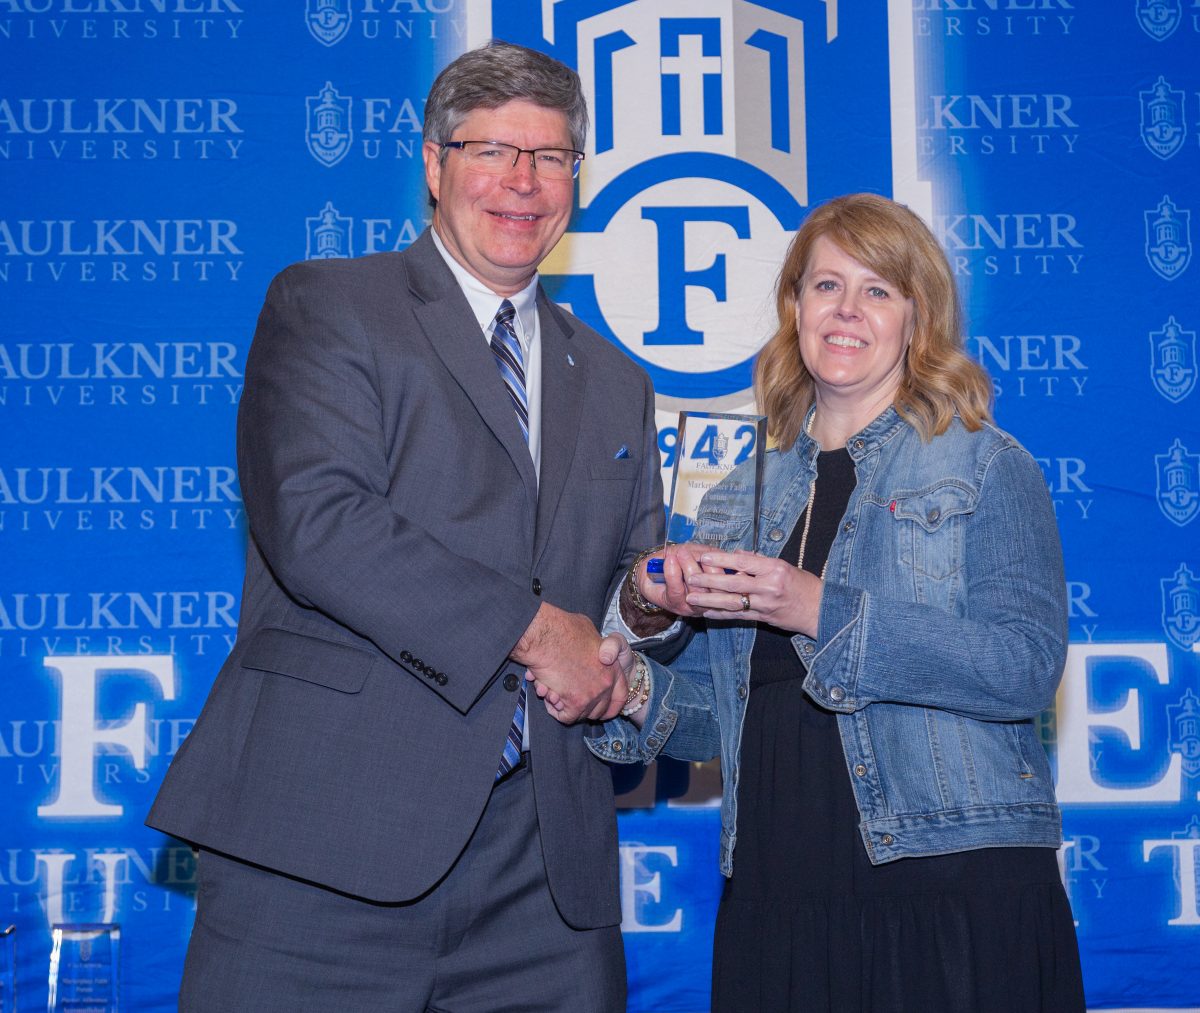 Faulkner President Mitch Henry presents the Distinguished Alumna Award to Julie Knapp.